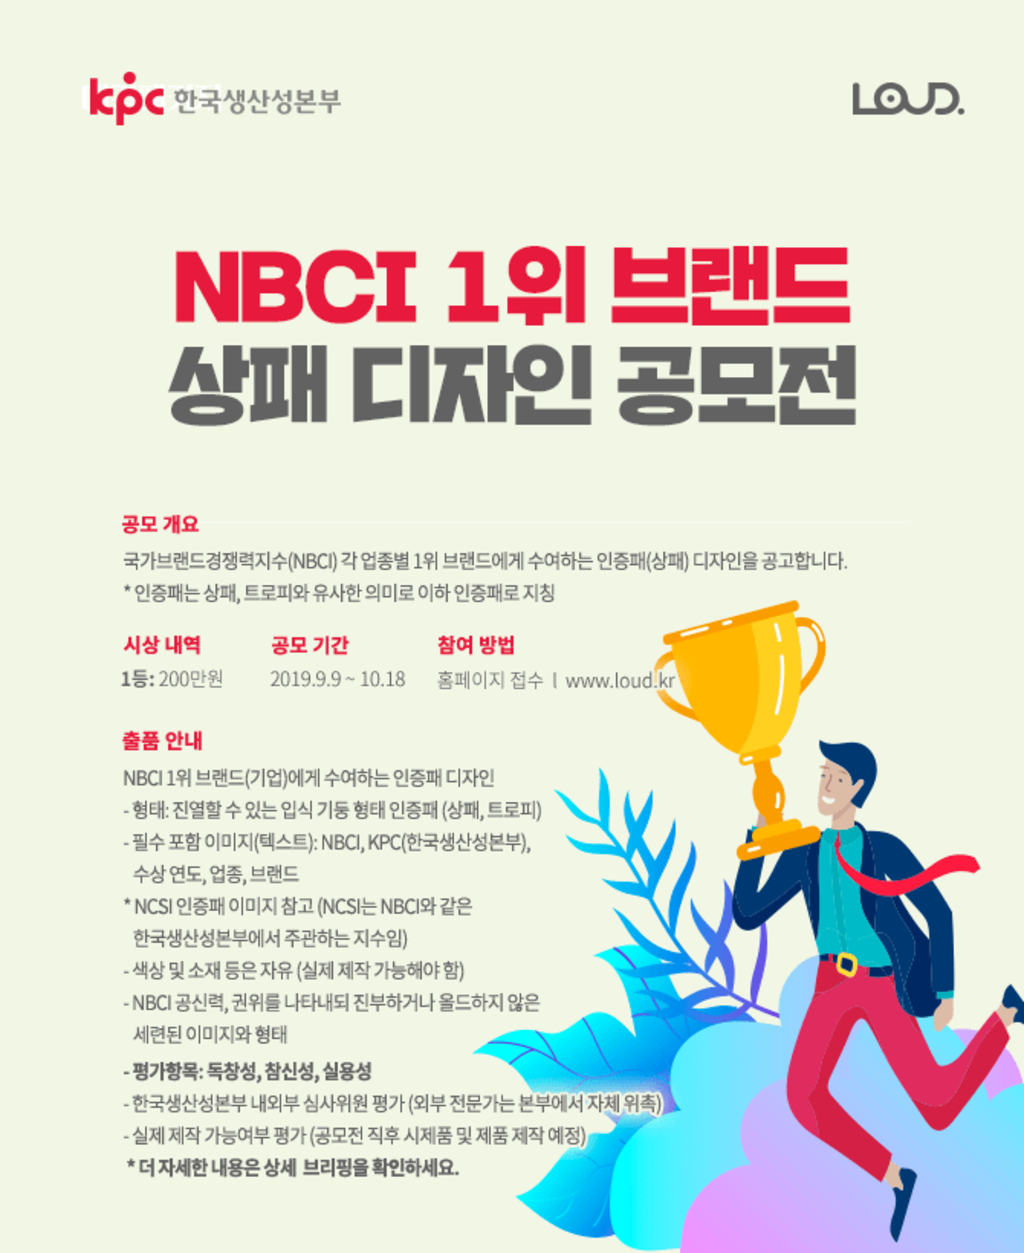 한국생산성본부 NBCI 1위 브랜드 상패 디자인공모전